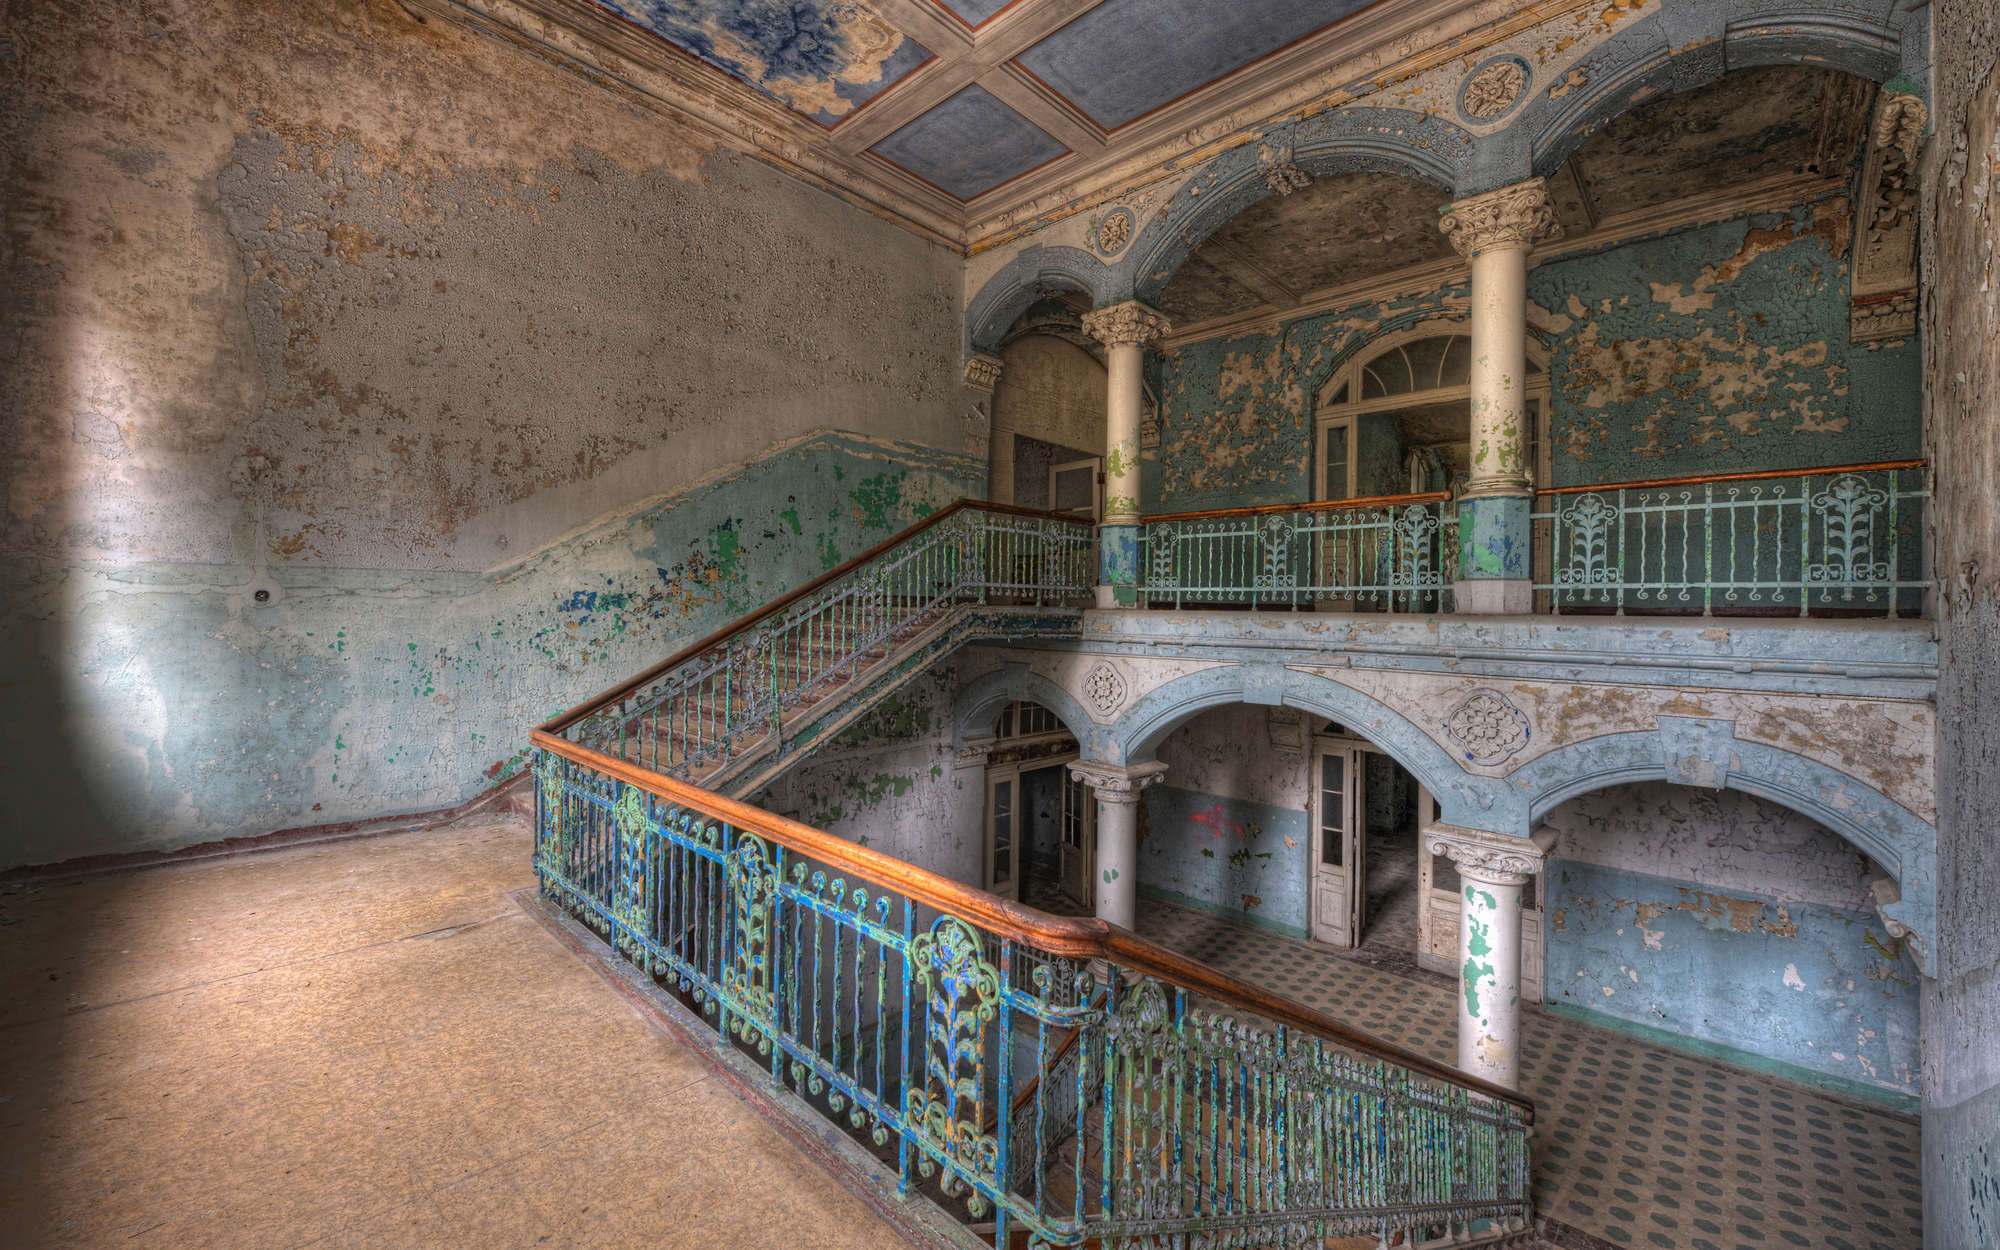             Fototapete Treppen in leerem Haus – Perlmutt Glattvlies
        